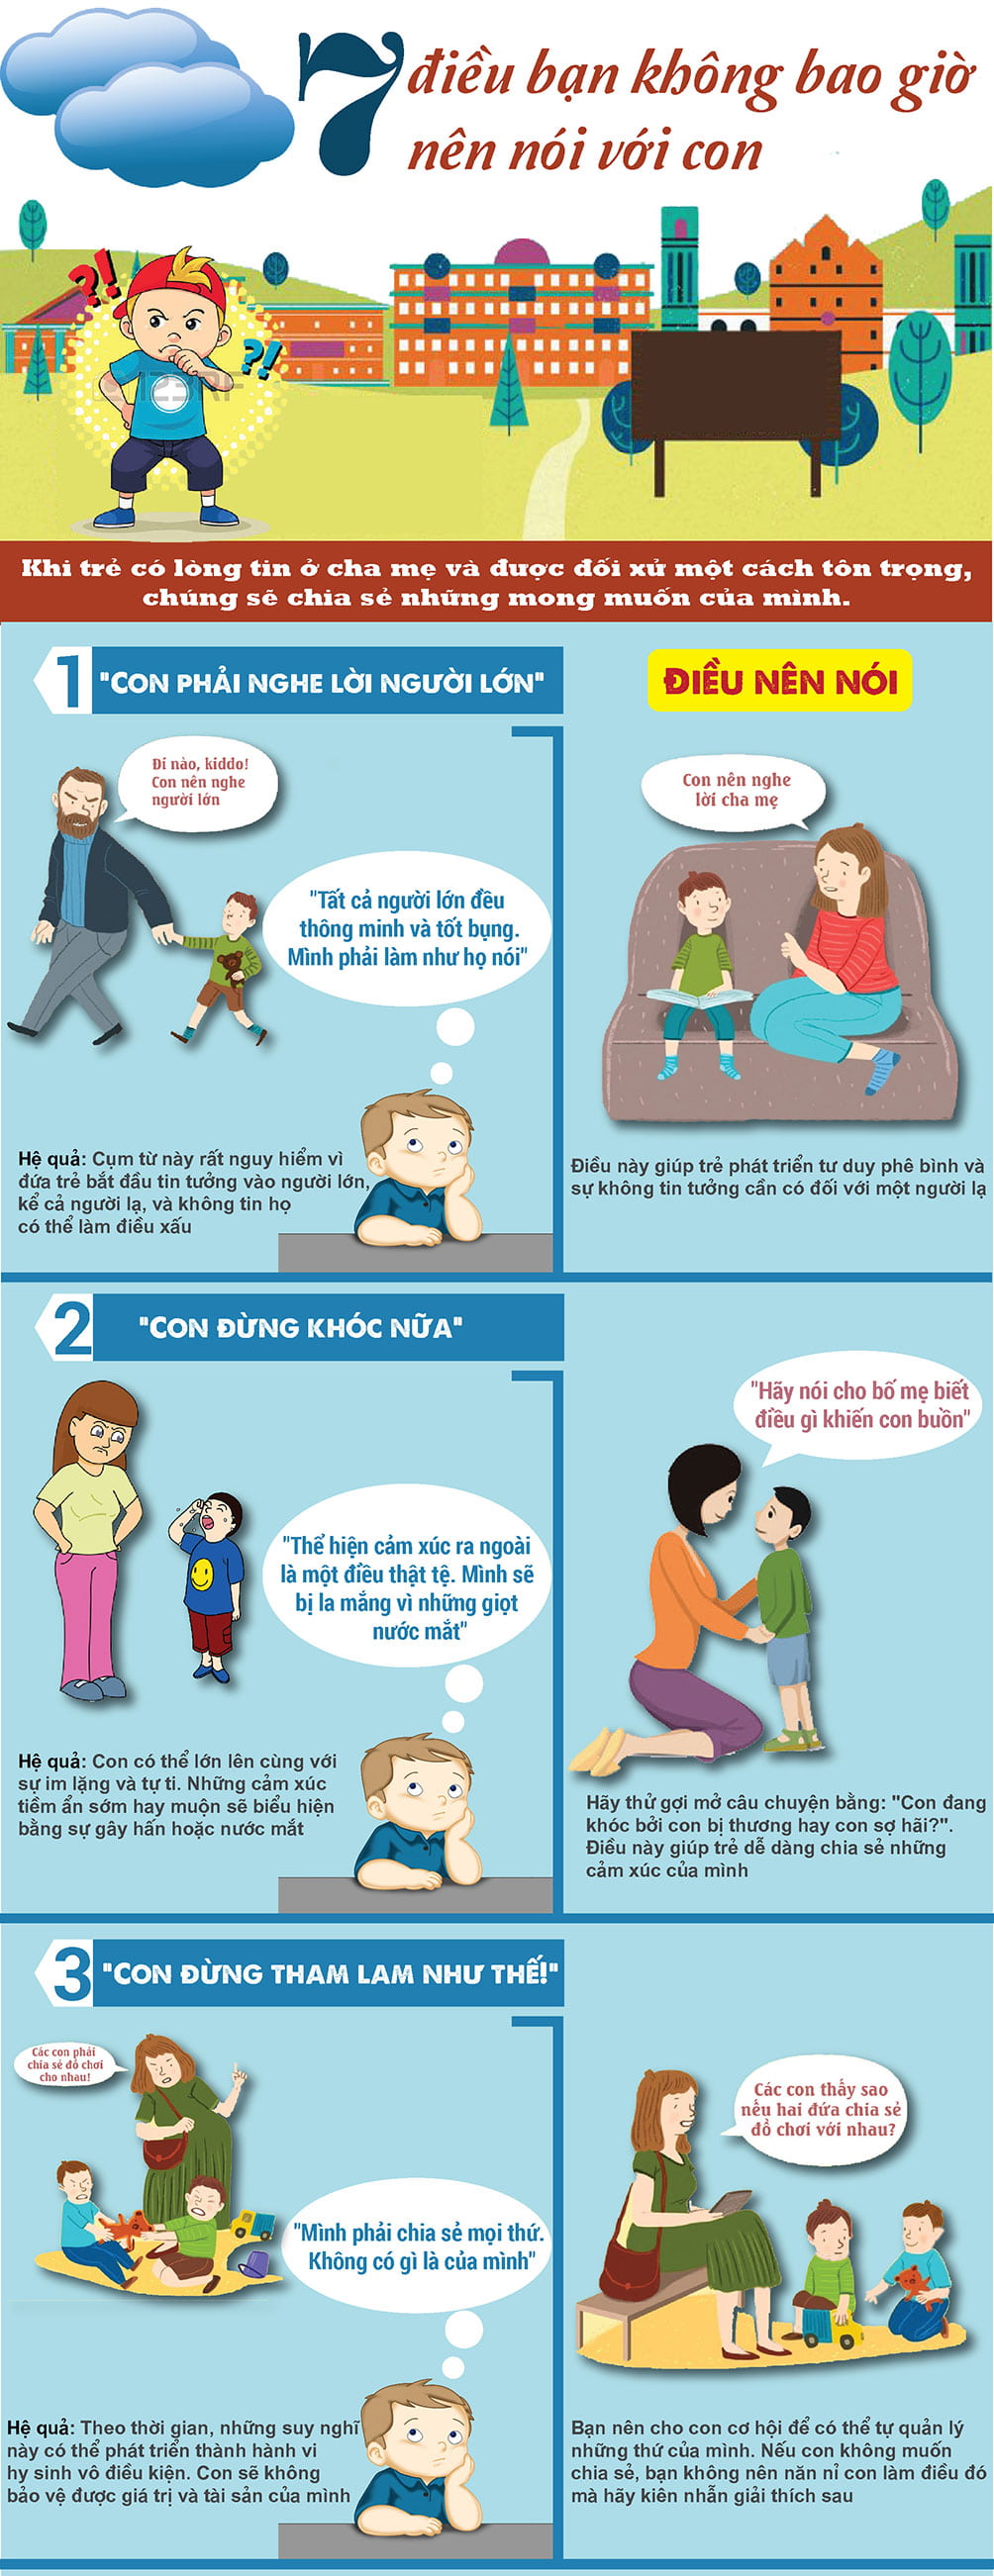 7 điều cha mẹ tuyệt đối tránh nói làm tổn thương trẻ - 1